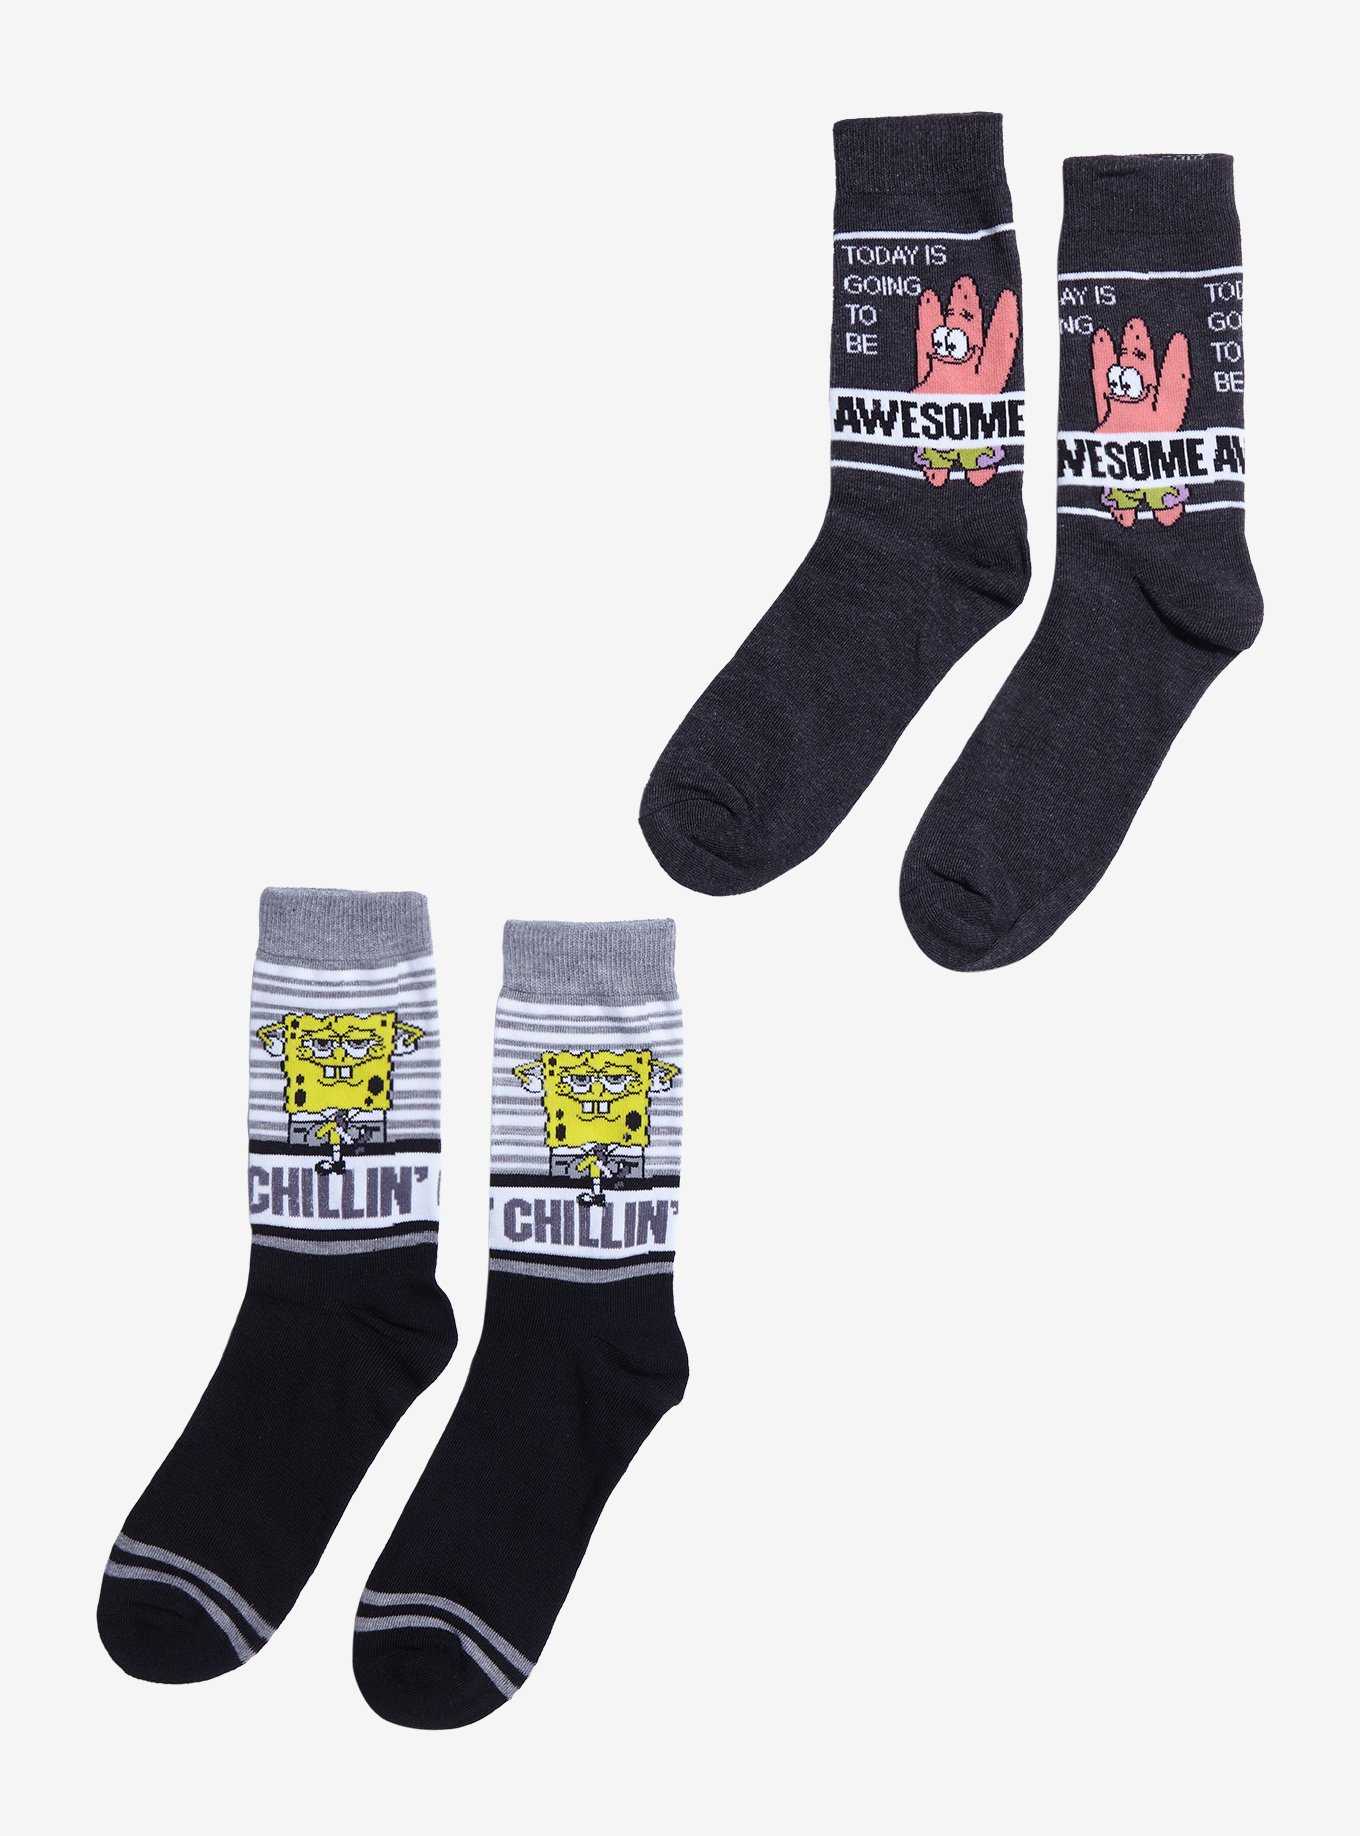 SpongeBob SquarePants Awesome & Chillin' Crew Socks 2 Pair, , hi-res